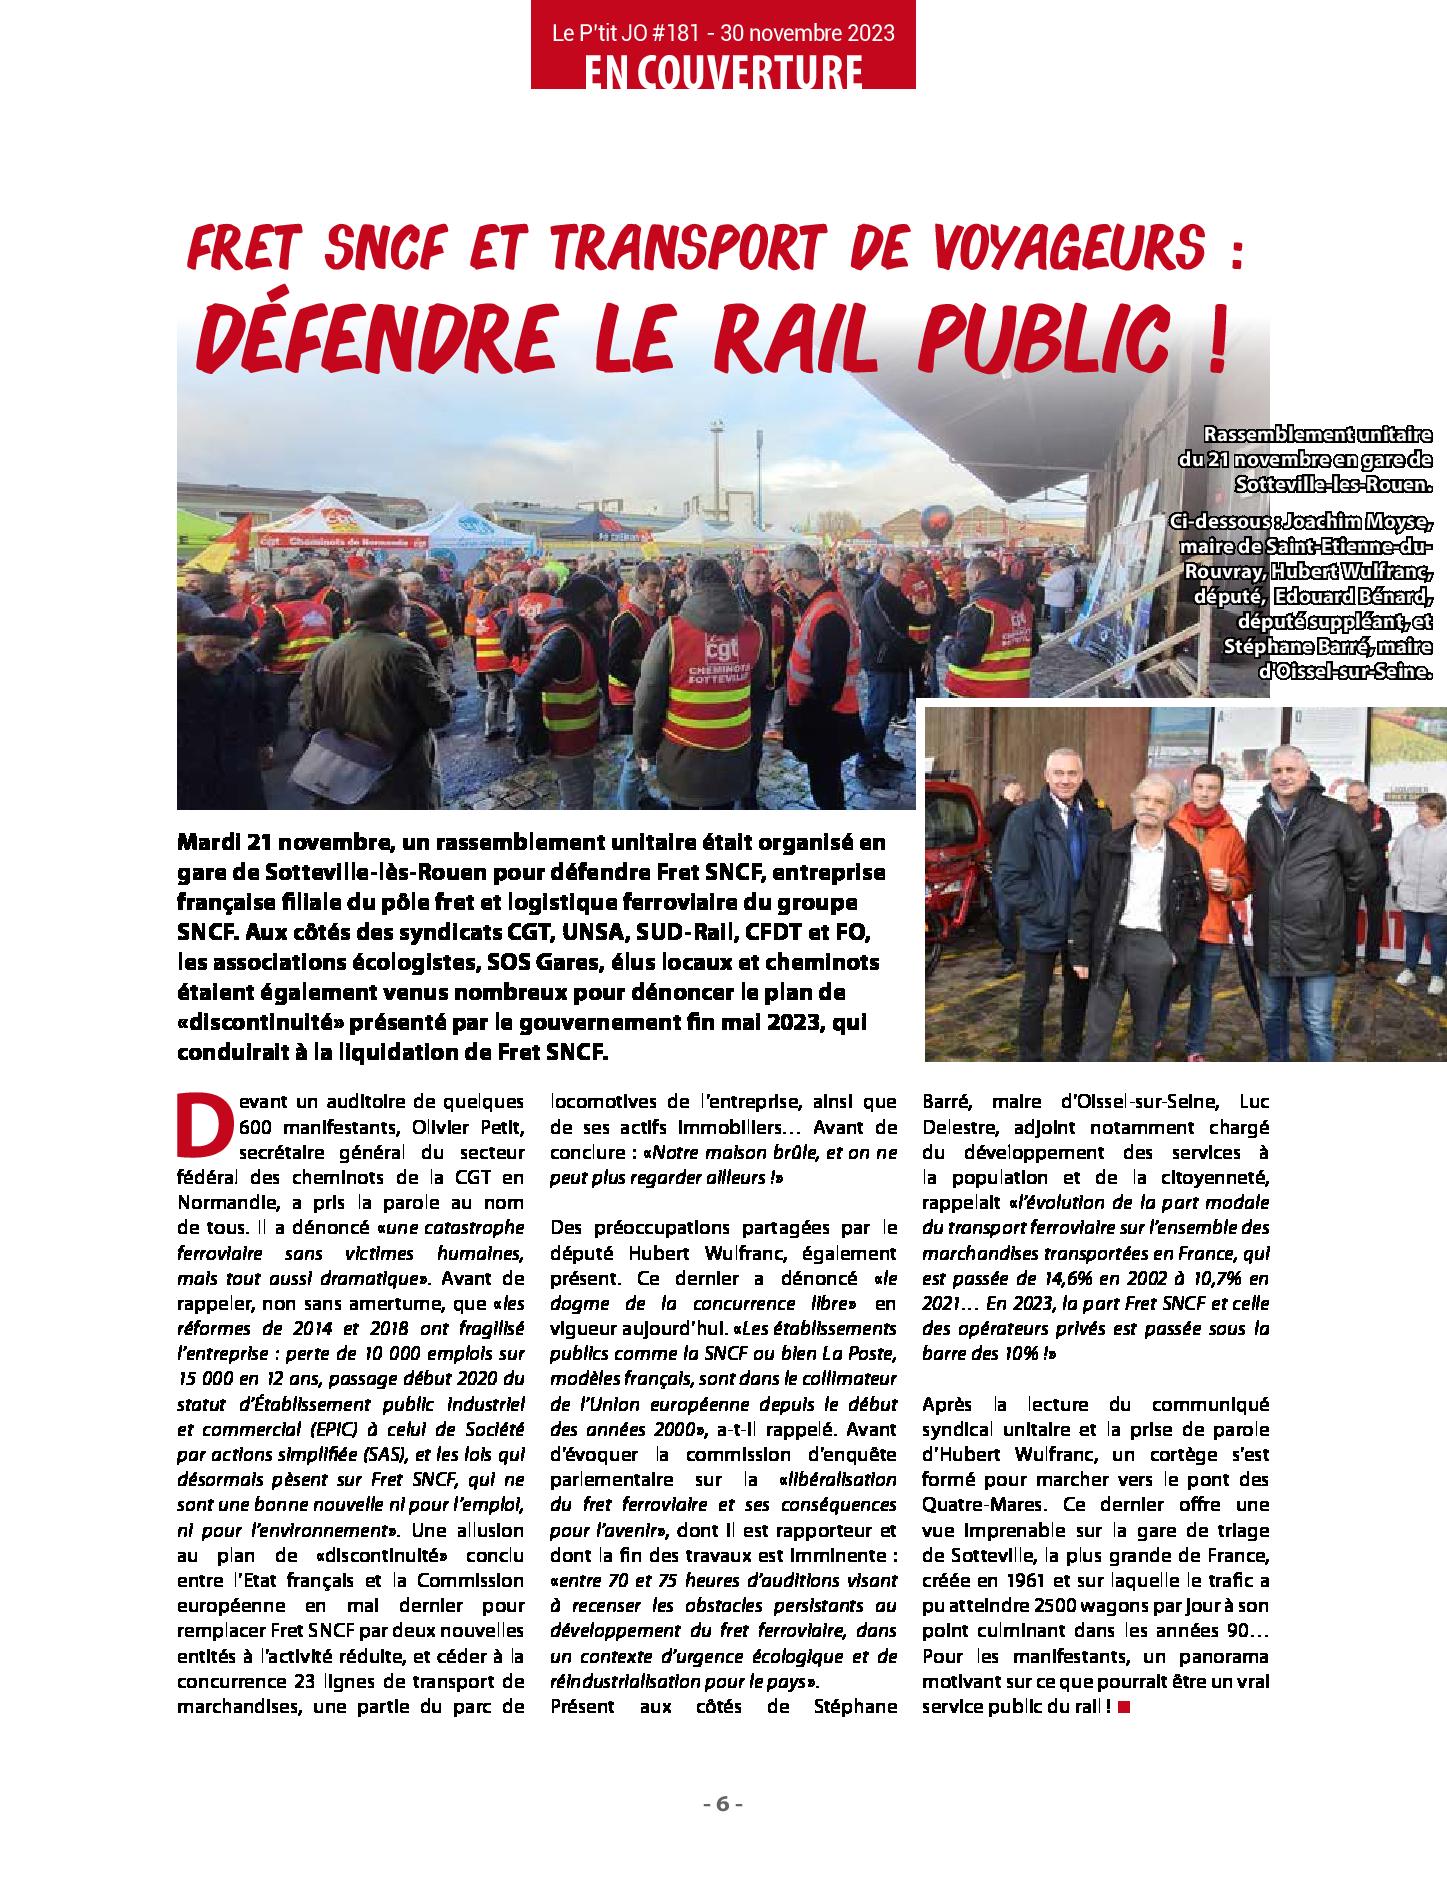 Article du P'tit journal d'Oissel sur le rassemblement du 21 novembre 2023 en gare de Sotteville-lès-Rouen